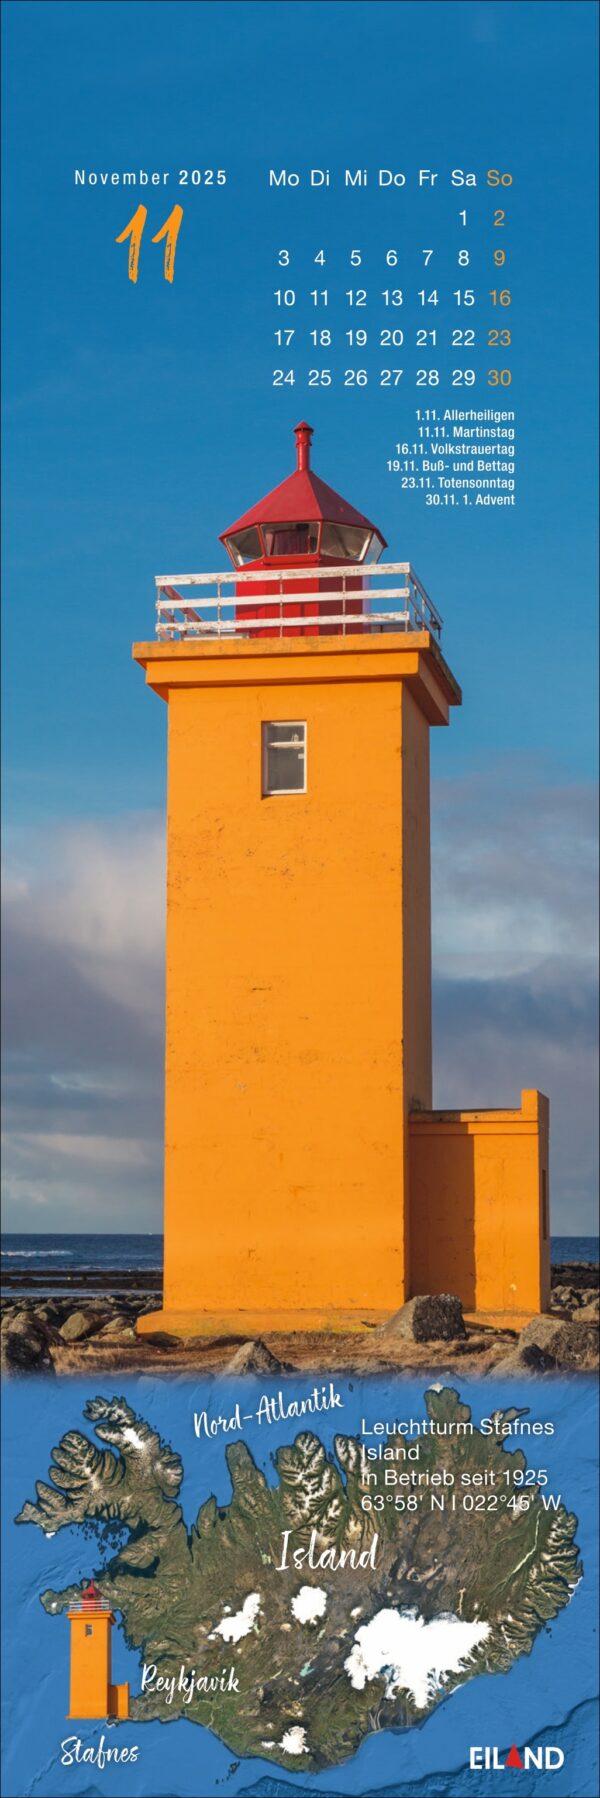 Eine lebendige Werbung mit dem hohen, gelben Leuchtturm von Stafnes vor einem klaren Himmel, darüber ein LilleEiland - Kalender 2025 für November und eine Karte, die seine Lage im Nordatlantik hervorhebt